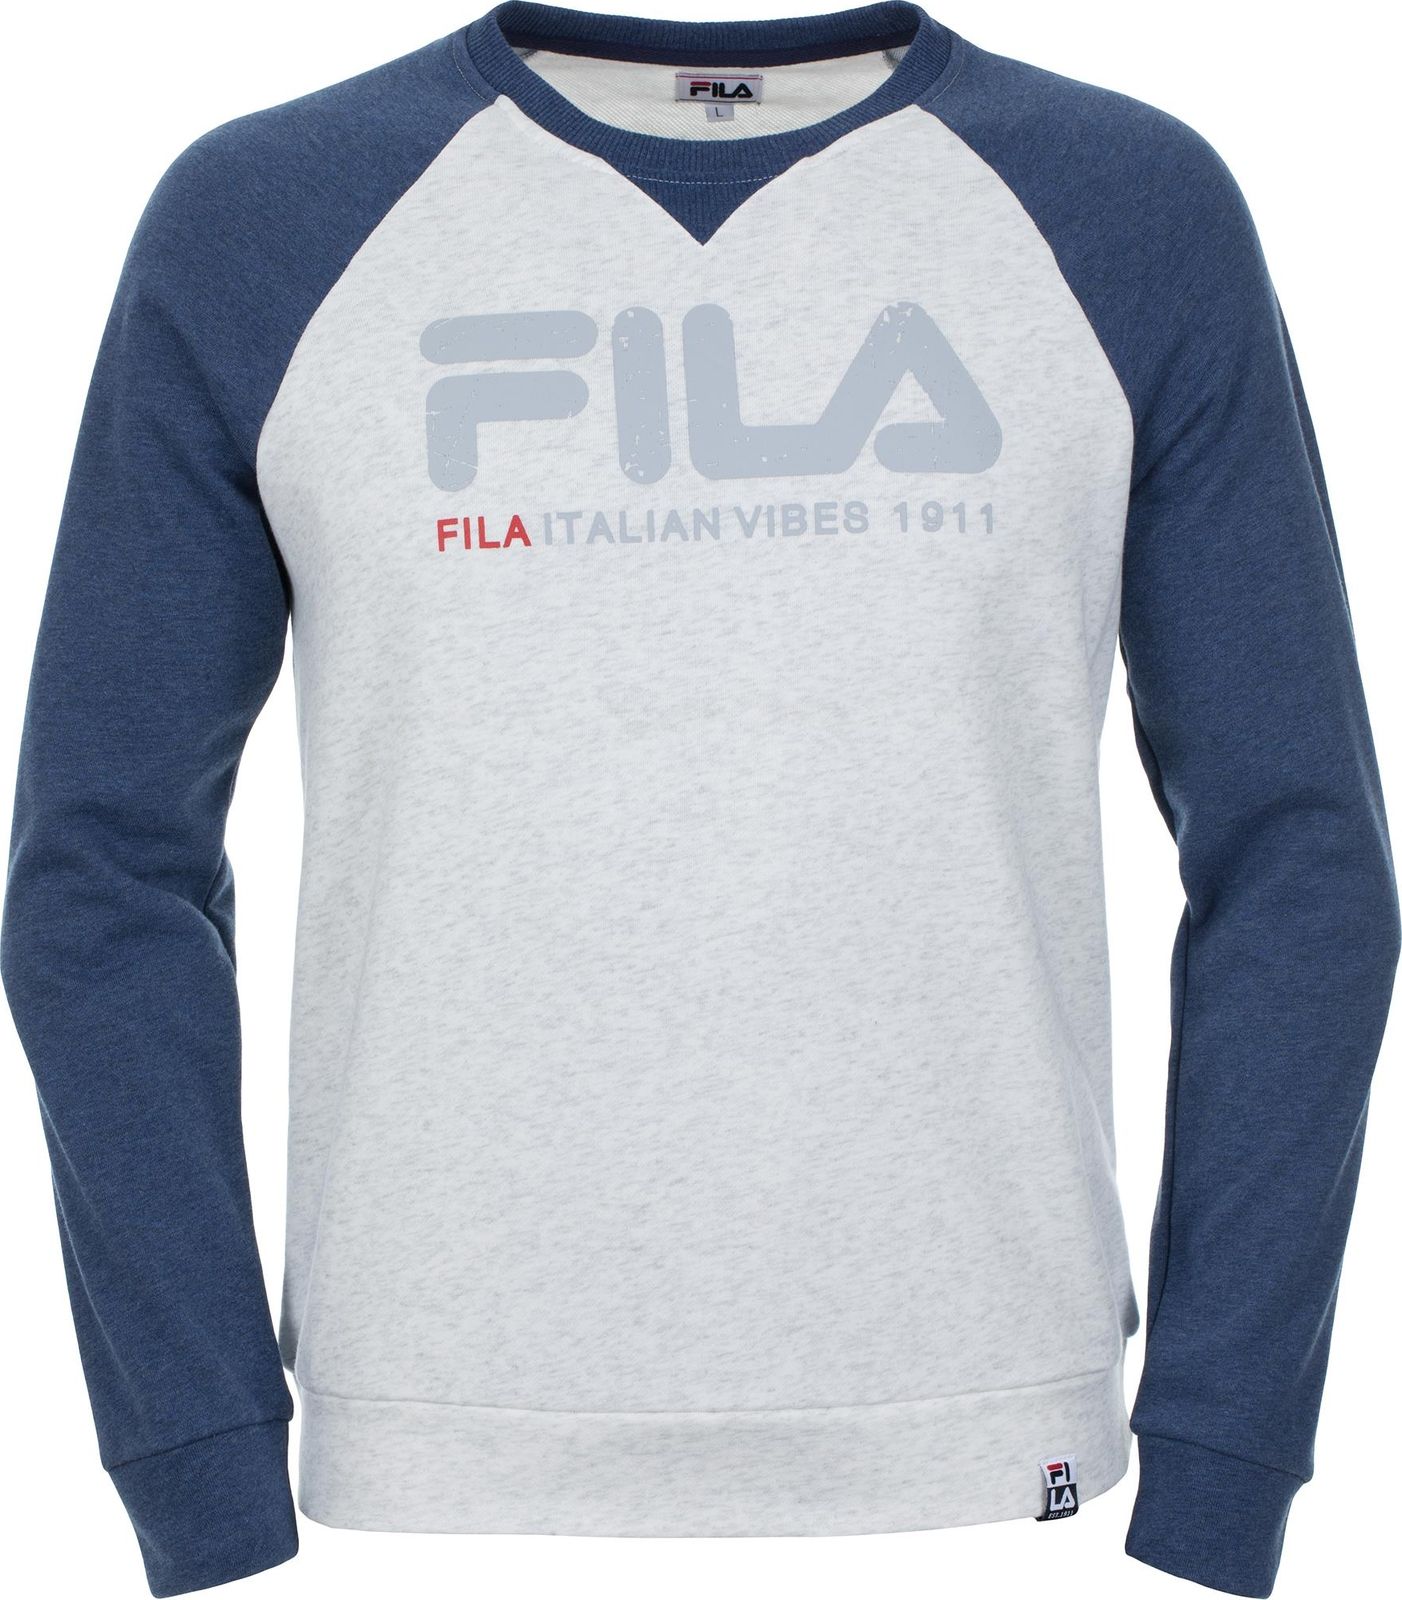   Fila Men's jumper, : -. S19AFLJUM03-1A.  L (50)